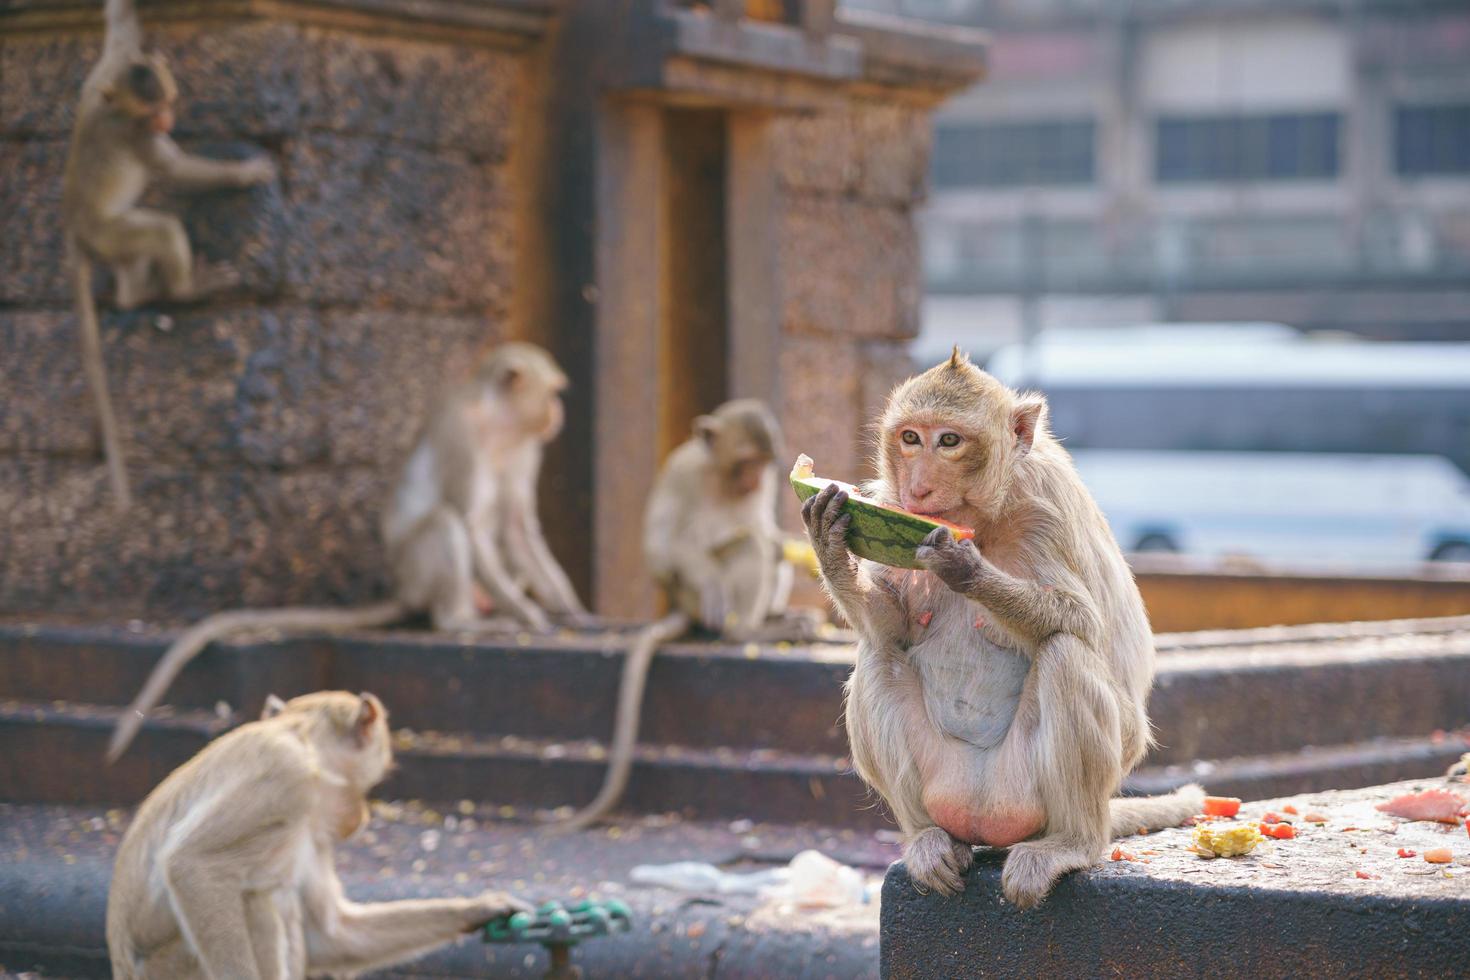 krab-etende makaak die fruit eet in snoeit Buri, Thailand foto